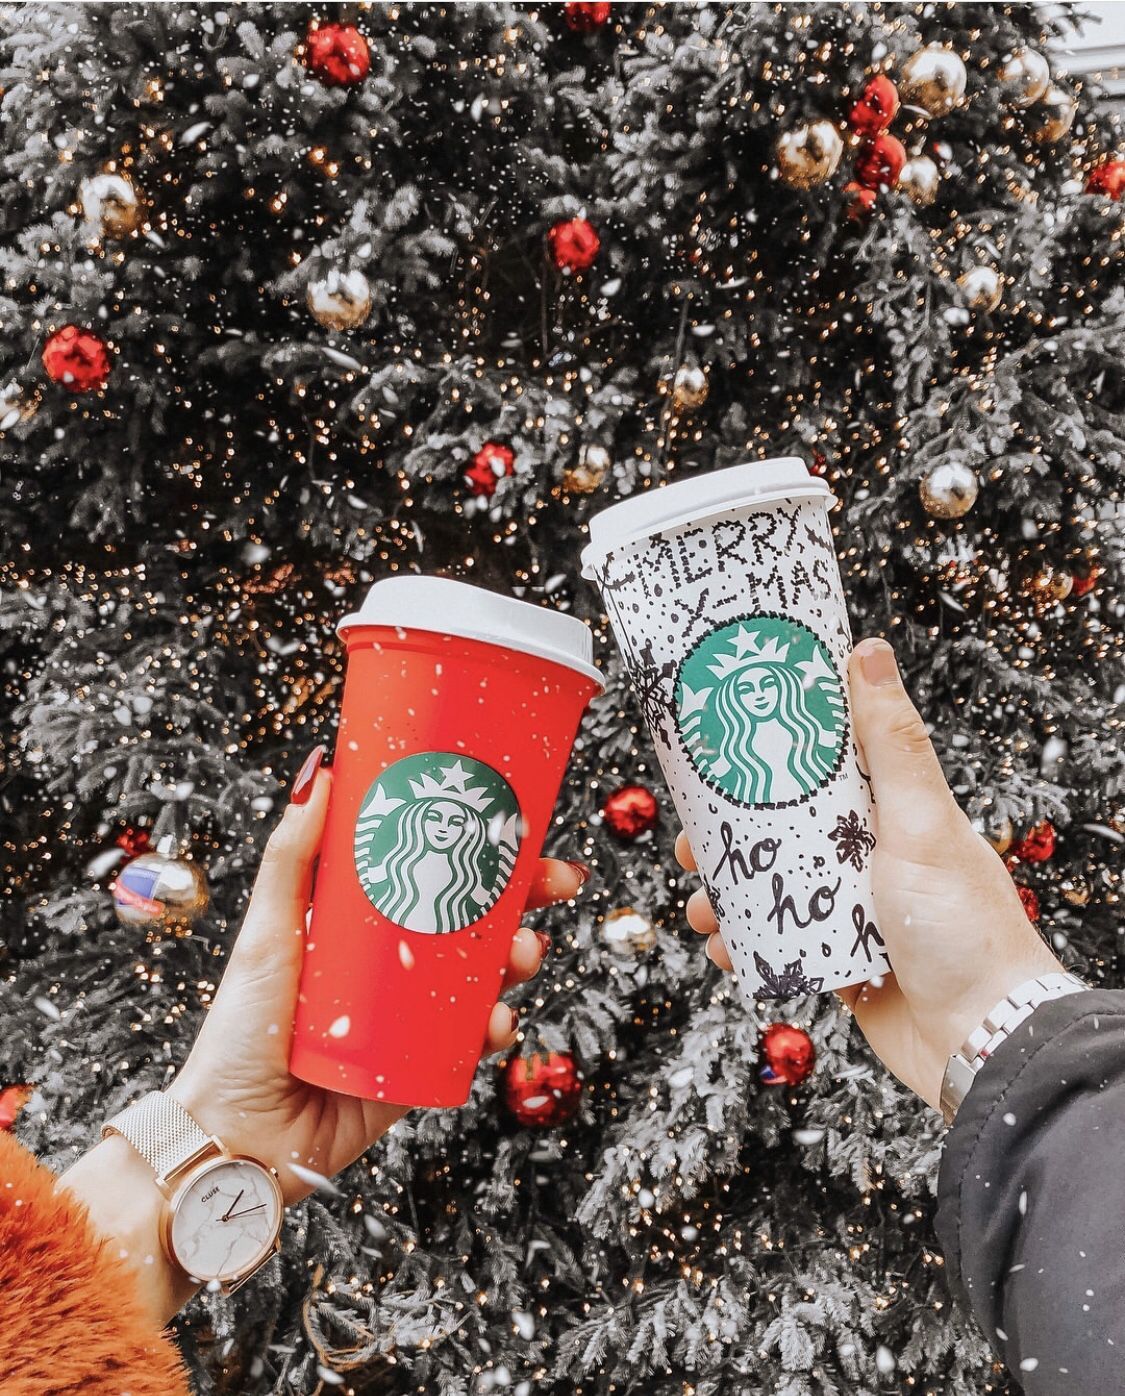 Best Friend Goals. Christmas feeling, Starbucks christmas, Christmas humor